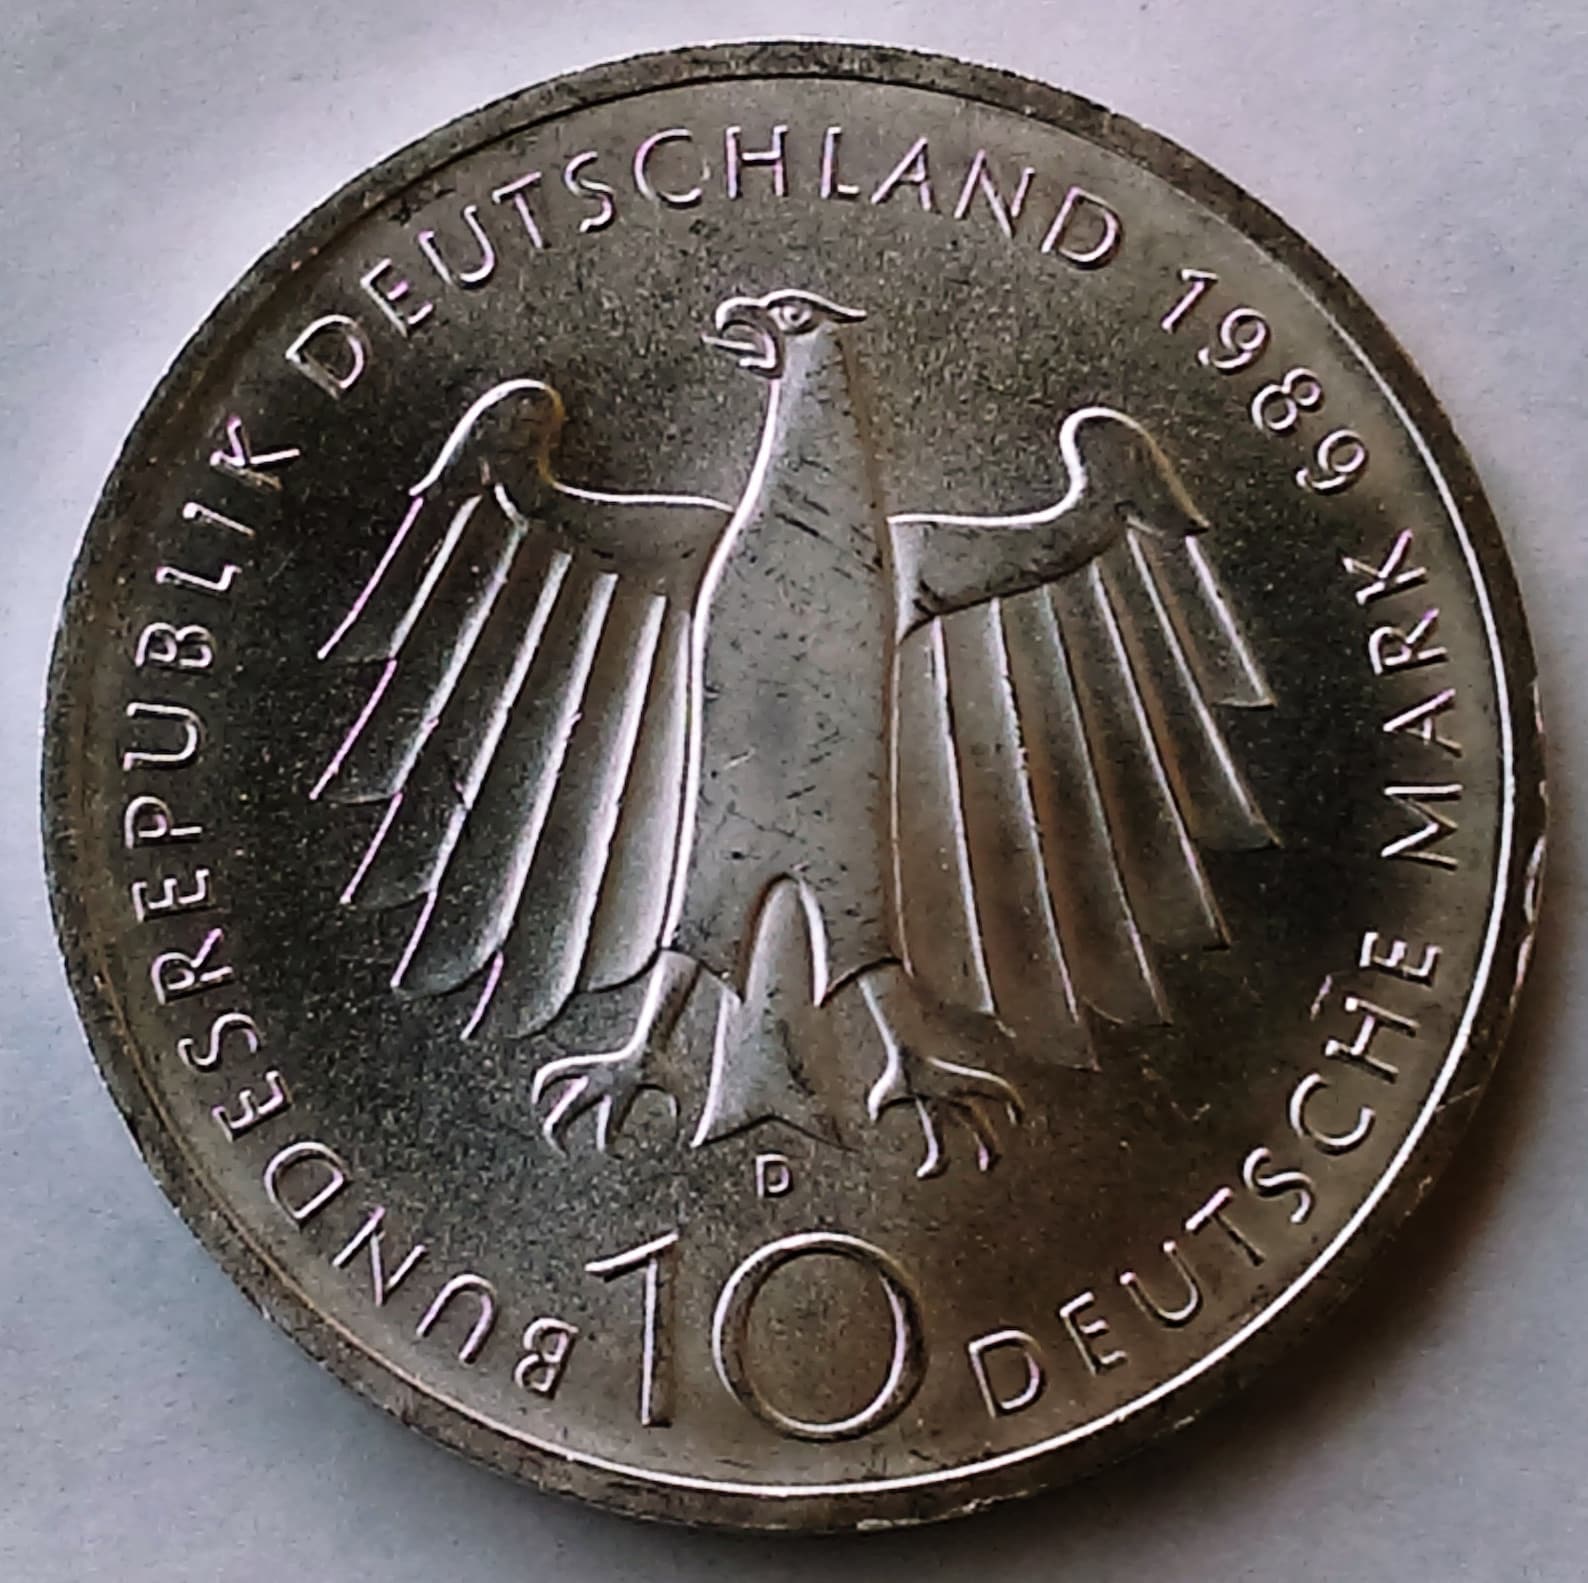 10 Deutsche Mark 10 DEM 1989. 2000 Years Bonn German | Etsy